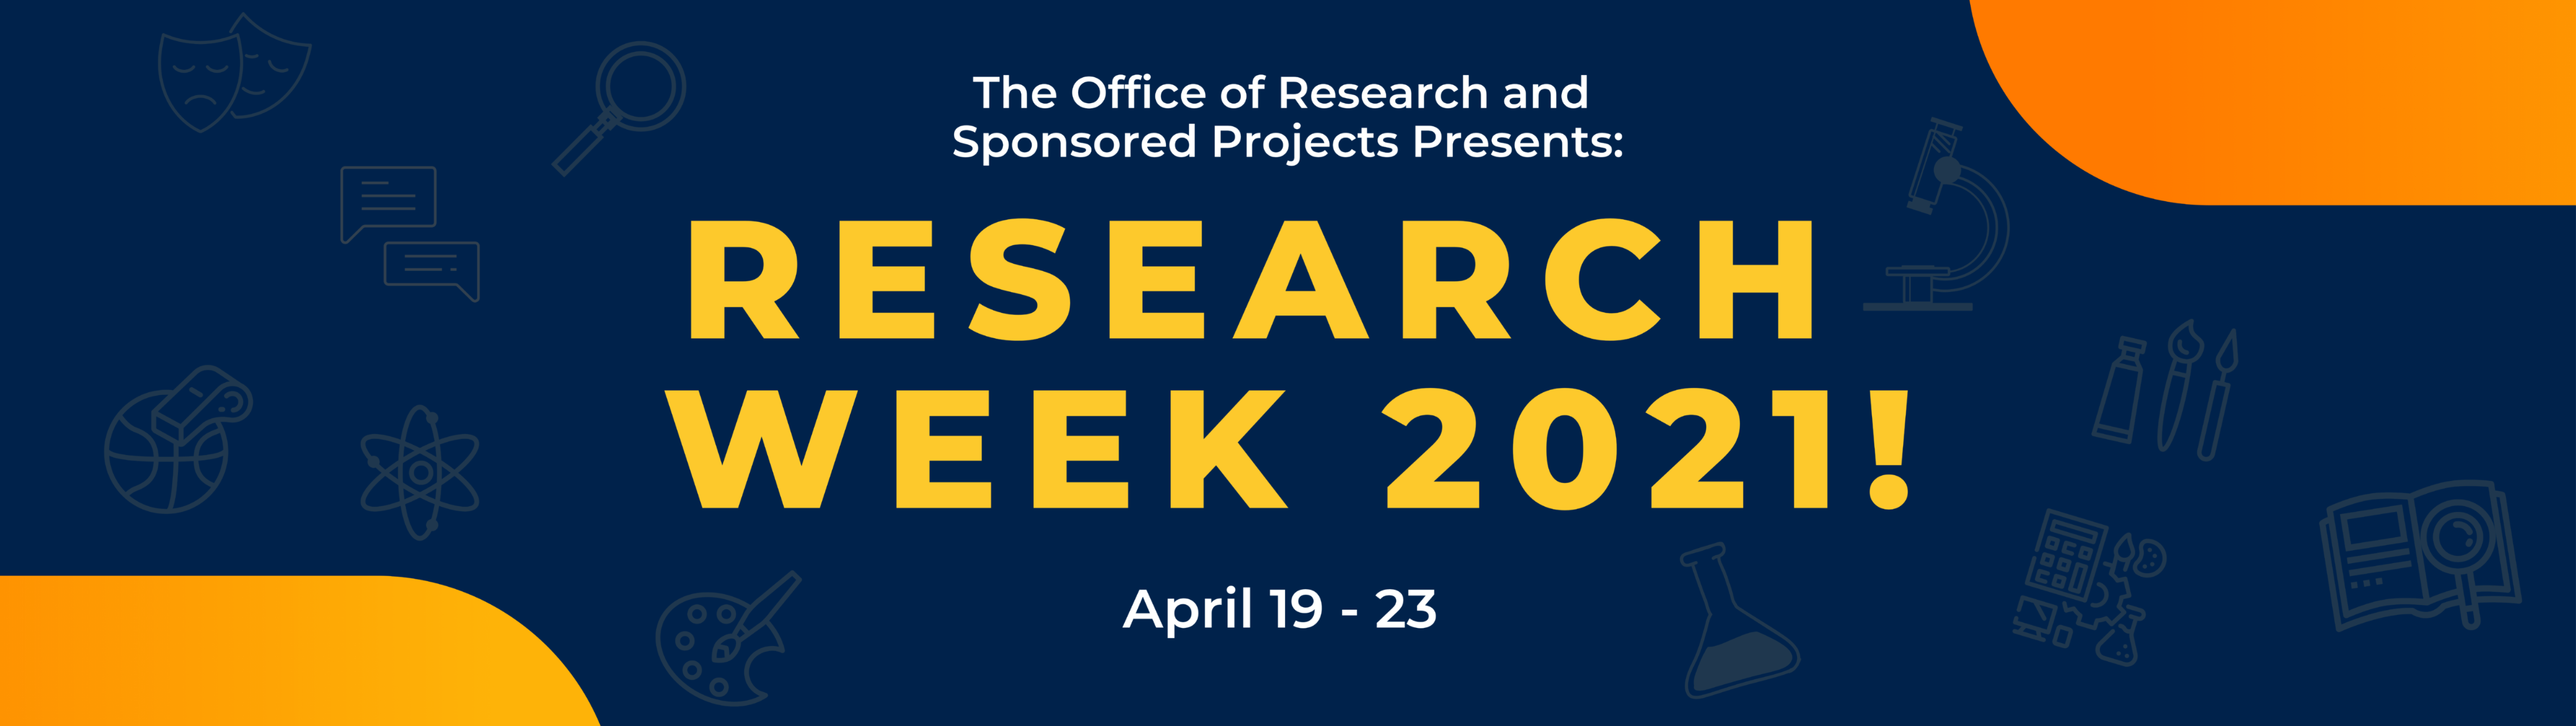 Research Week 2021 Titan Research Gateway CSUF